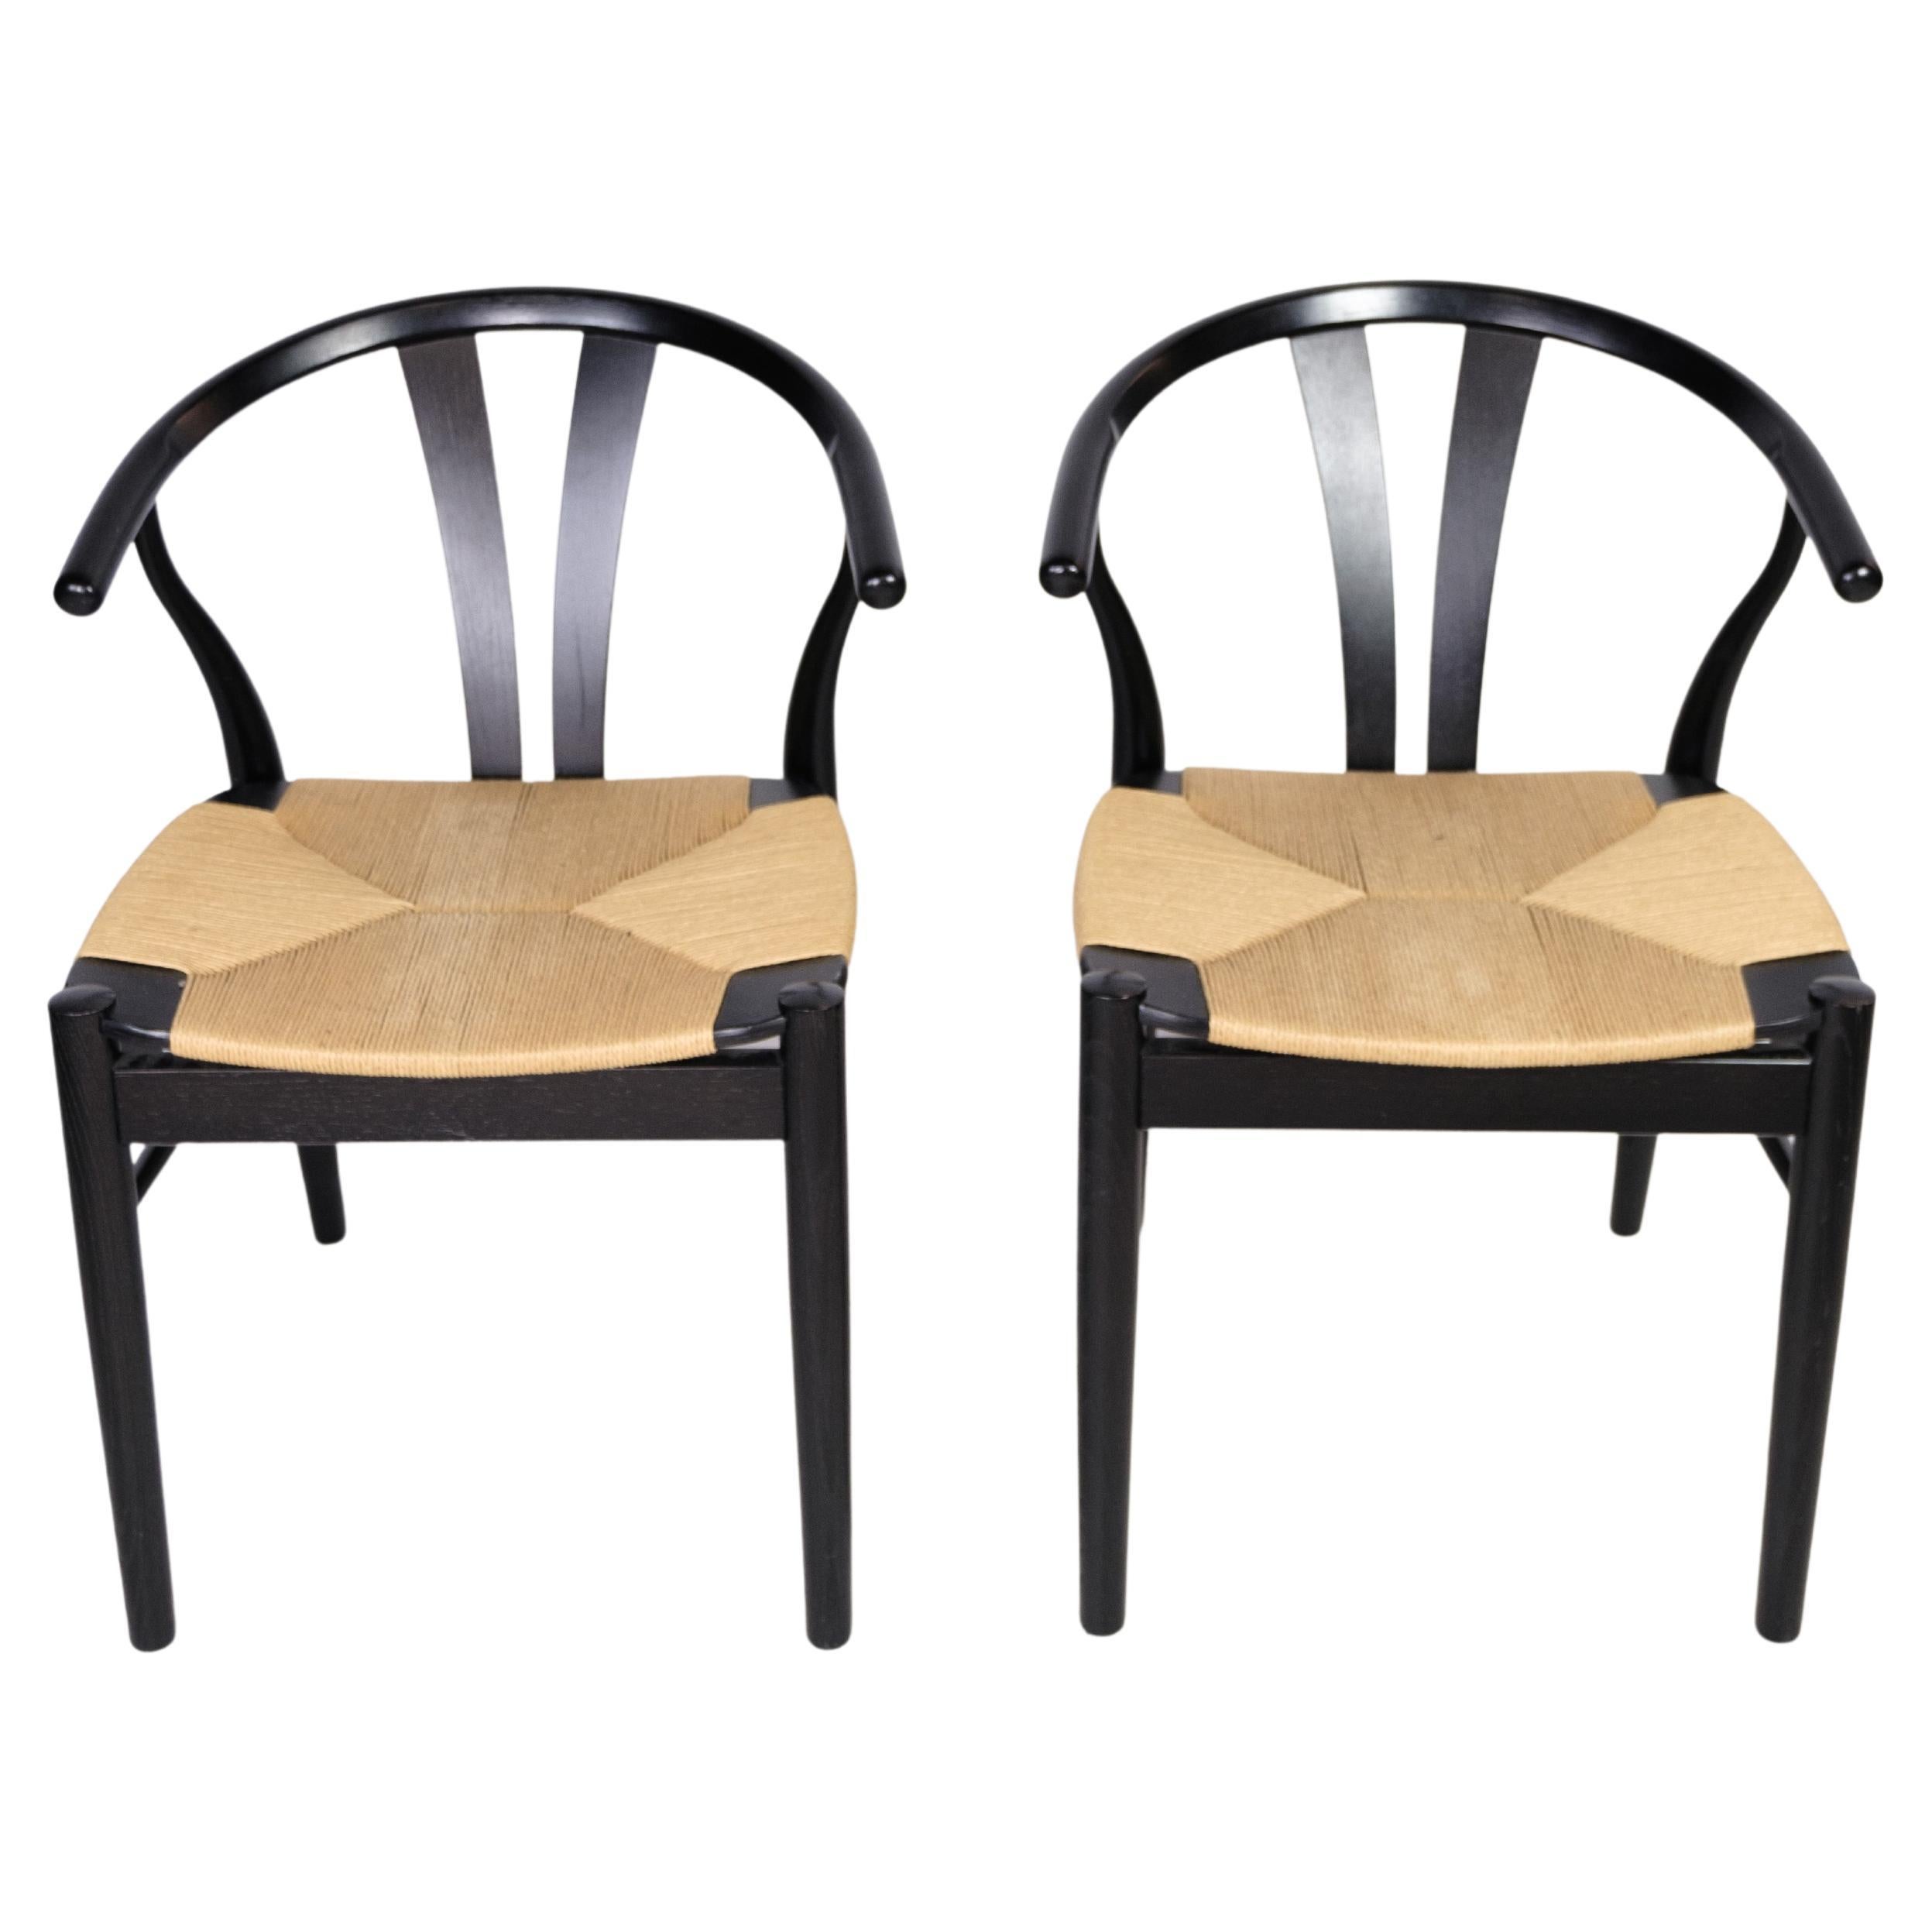 Scandinavian Modern, Pair of Chairs, Nordic Design, Findahl Møbelfabrik